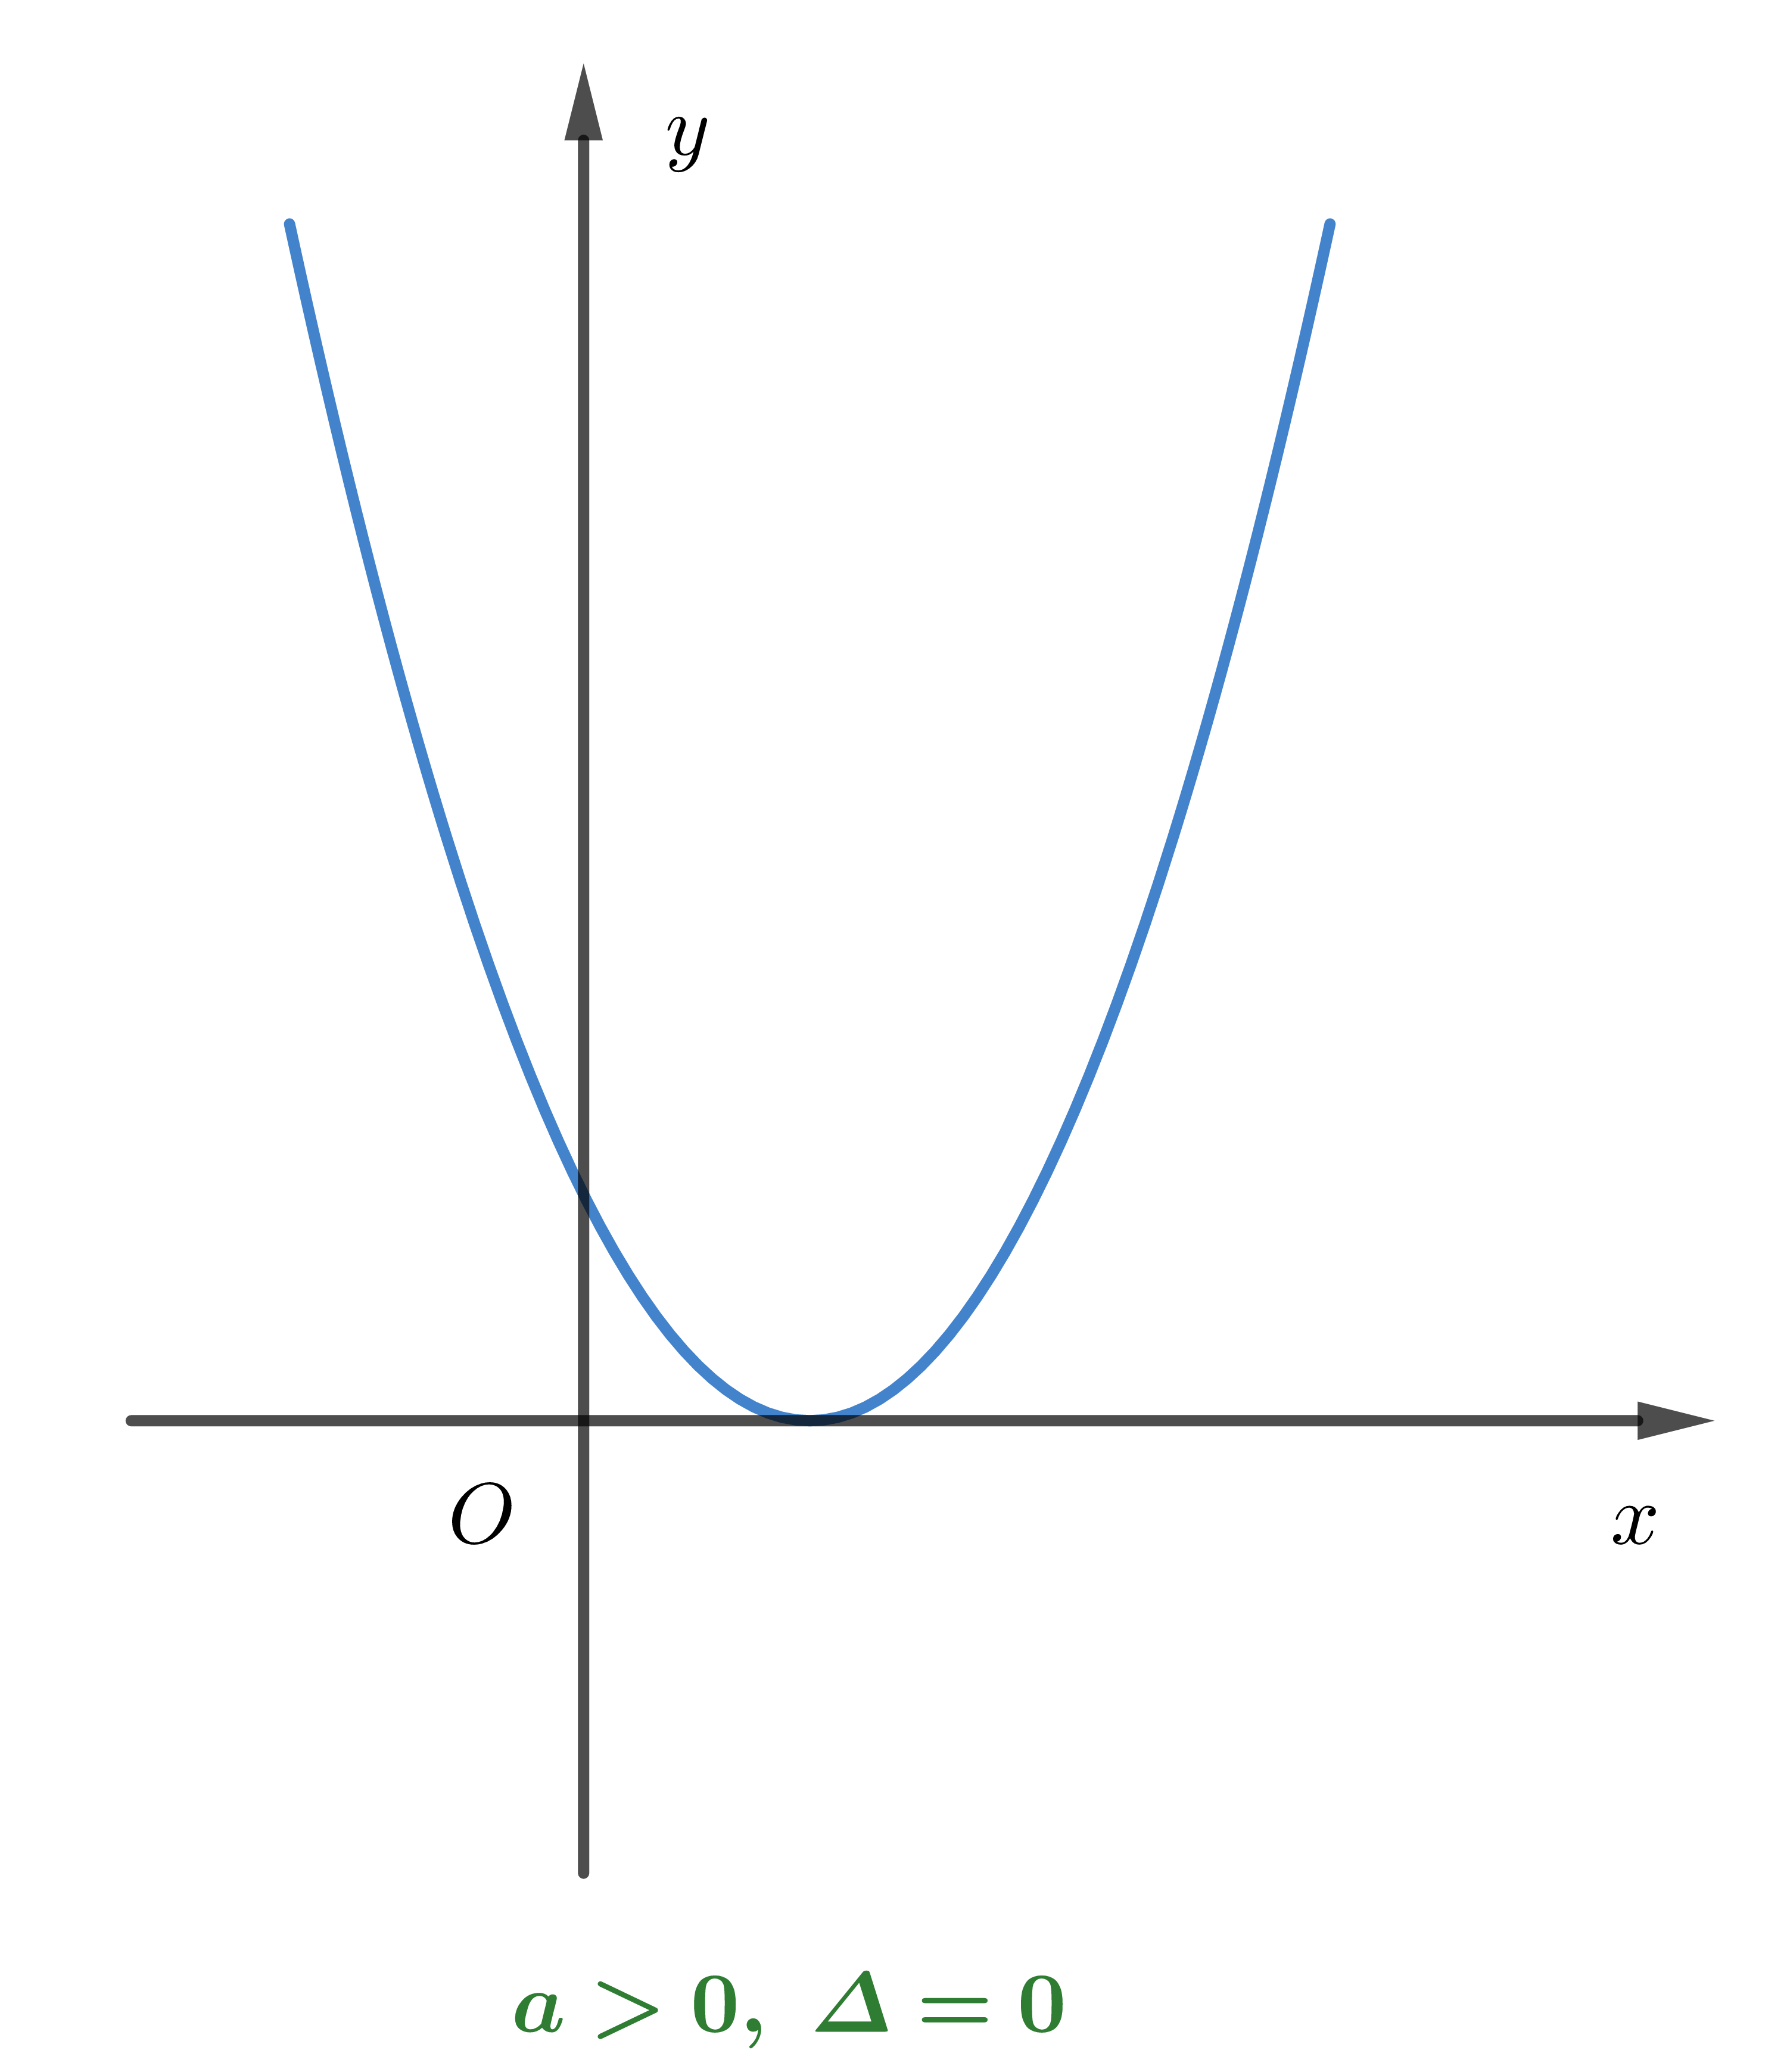 Vẽ parabol là một kỹ thuật quan trọng trong toán học và các lĩnh vực khác như vật lý, hoá học. Hãy cùng khám phá cách vẽ parabol để hiểu rõ hơn về tính đối xứng và vị trí của điểm quy đổi. Hãy xem hình liên quan để thấy cách vẽ parabol đẹp mắt.